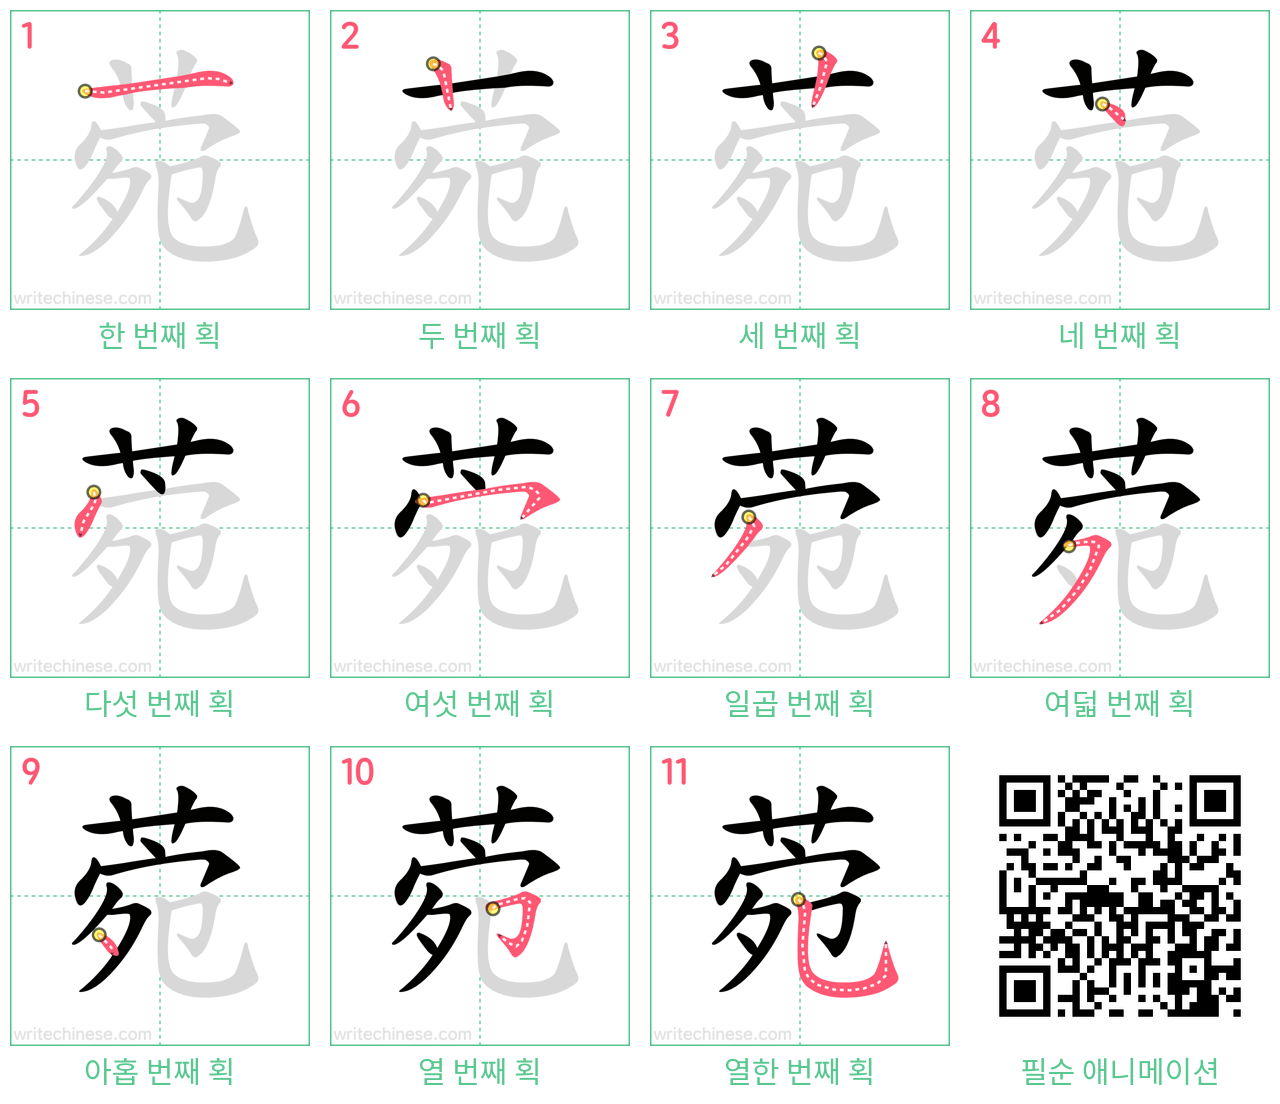 菀 step-by-step stroke order diagrams